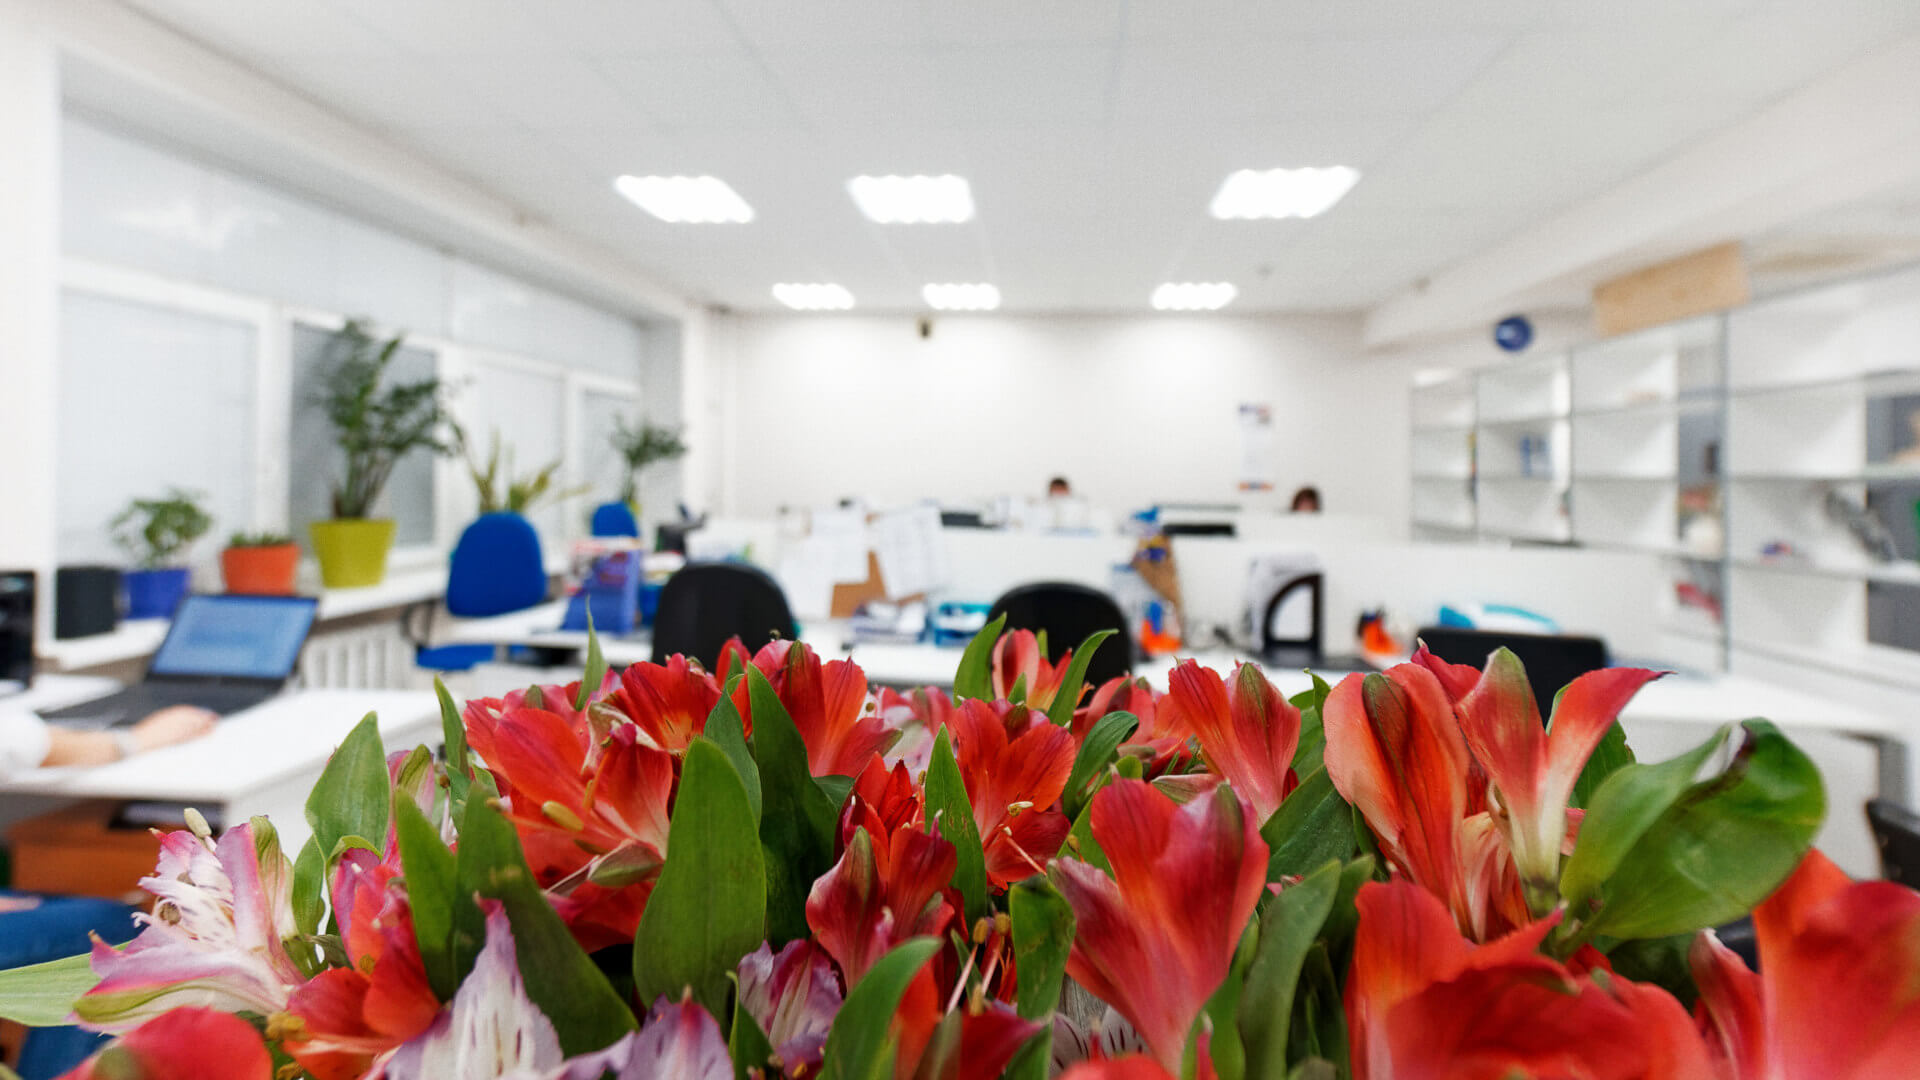 Интерьер офиса через цветы - подойдёт для оформления корпоративных открыток 